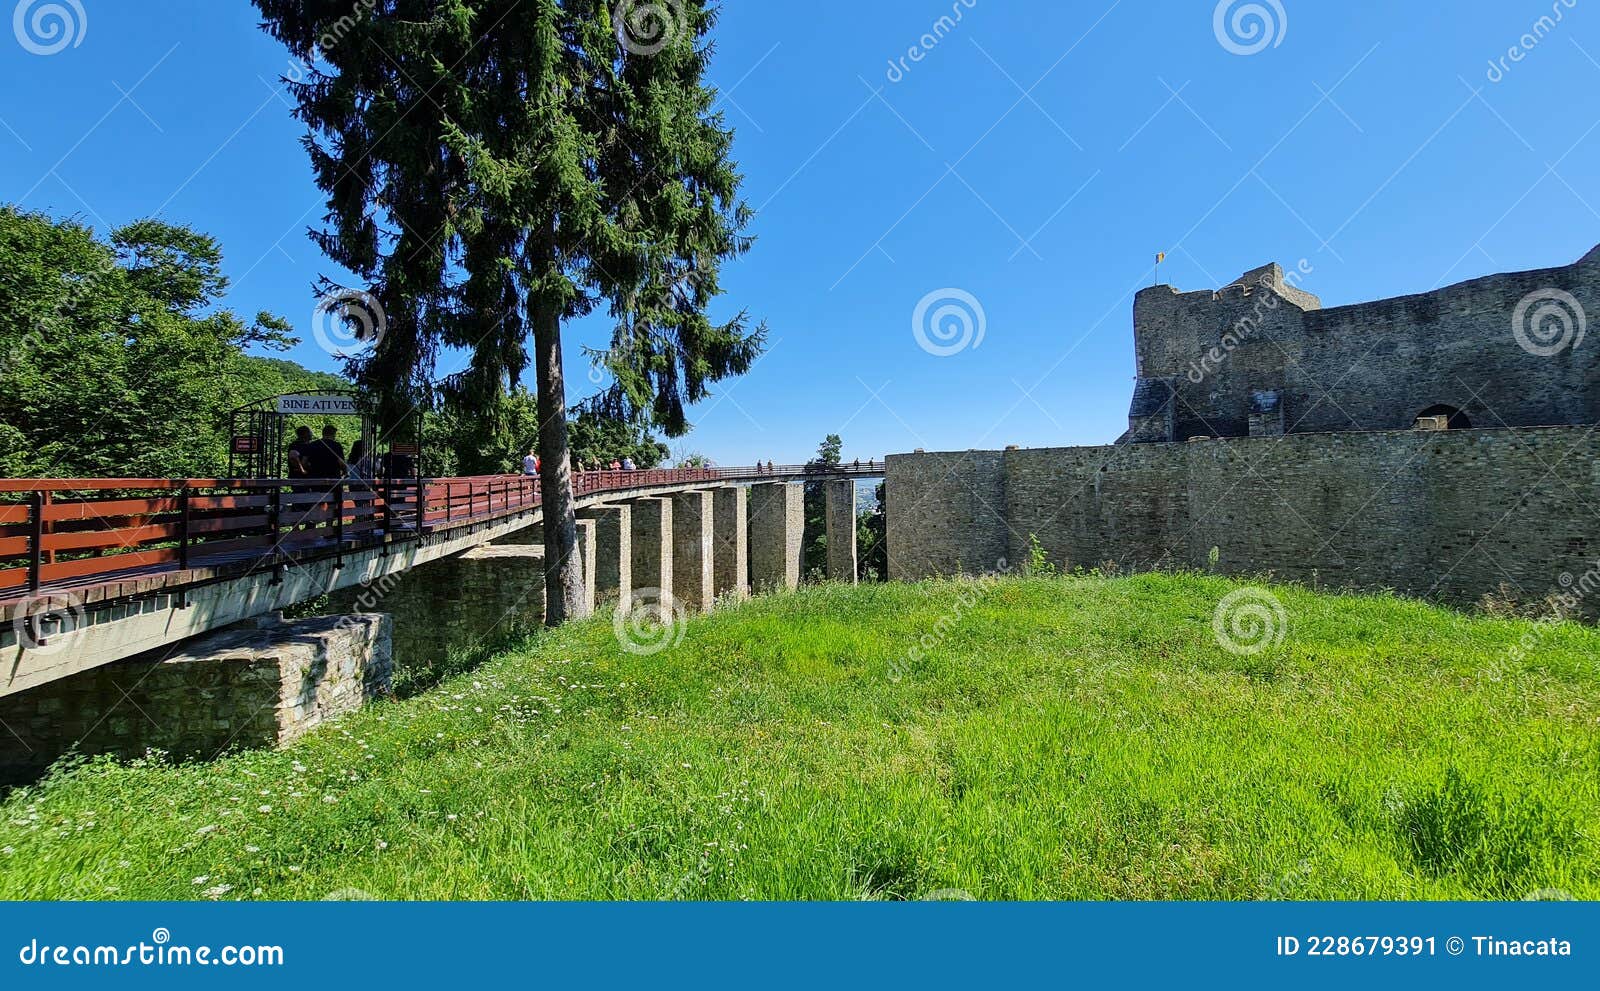 Cetatea Tighina Stock Photos - Free & Royalty-Free Stock Photos